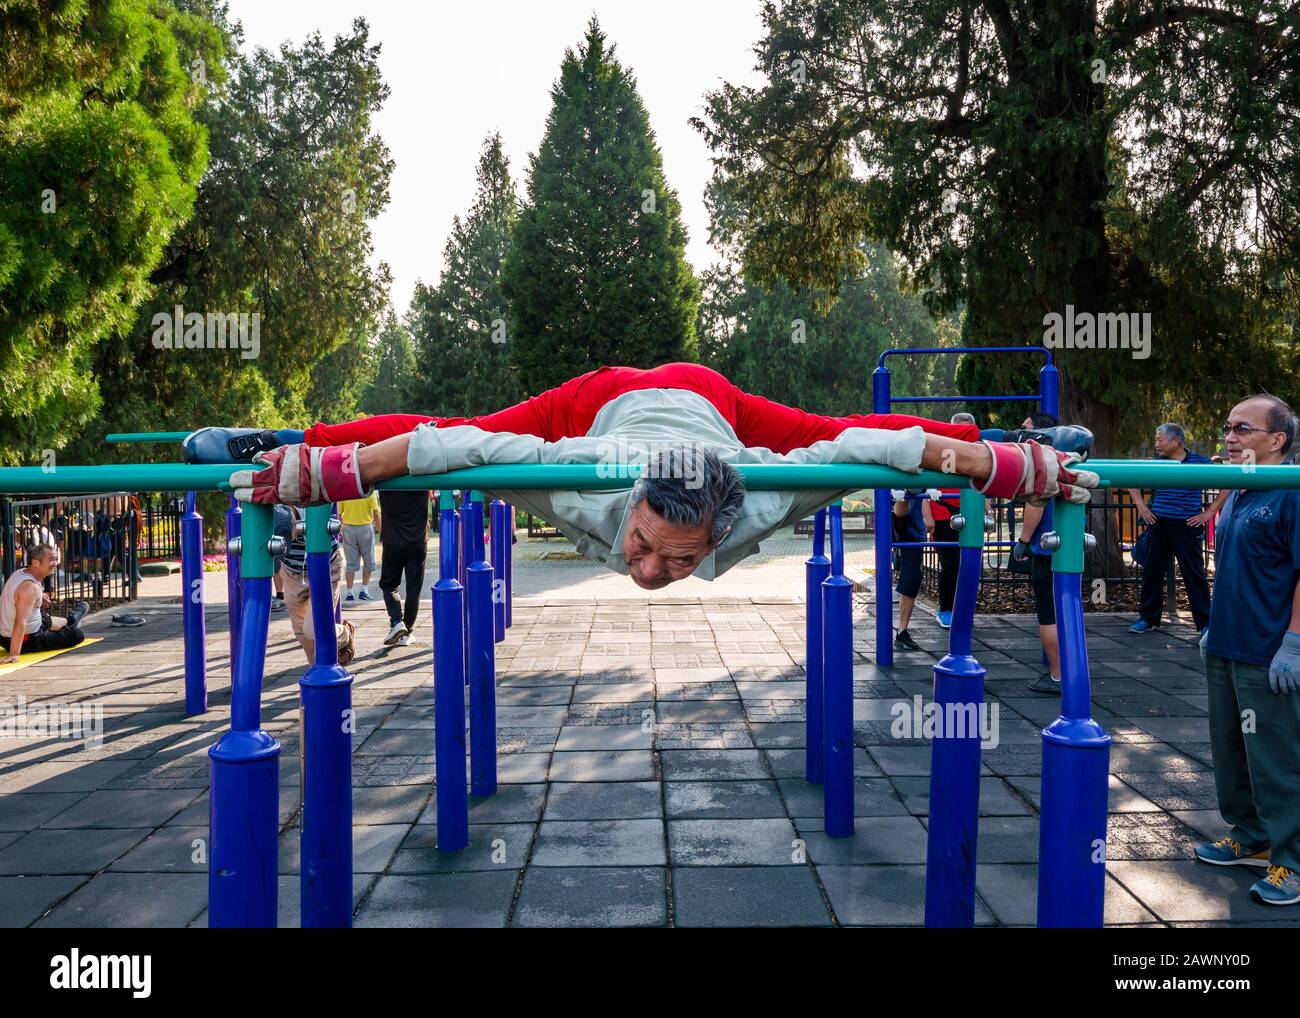 Der ältere Chinese trainiert im Outdoor-Fitnessstudio, in dem die Splits gemacht werden, Tiantan Park, Peking, China, Asien Stockfoto